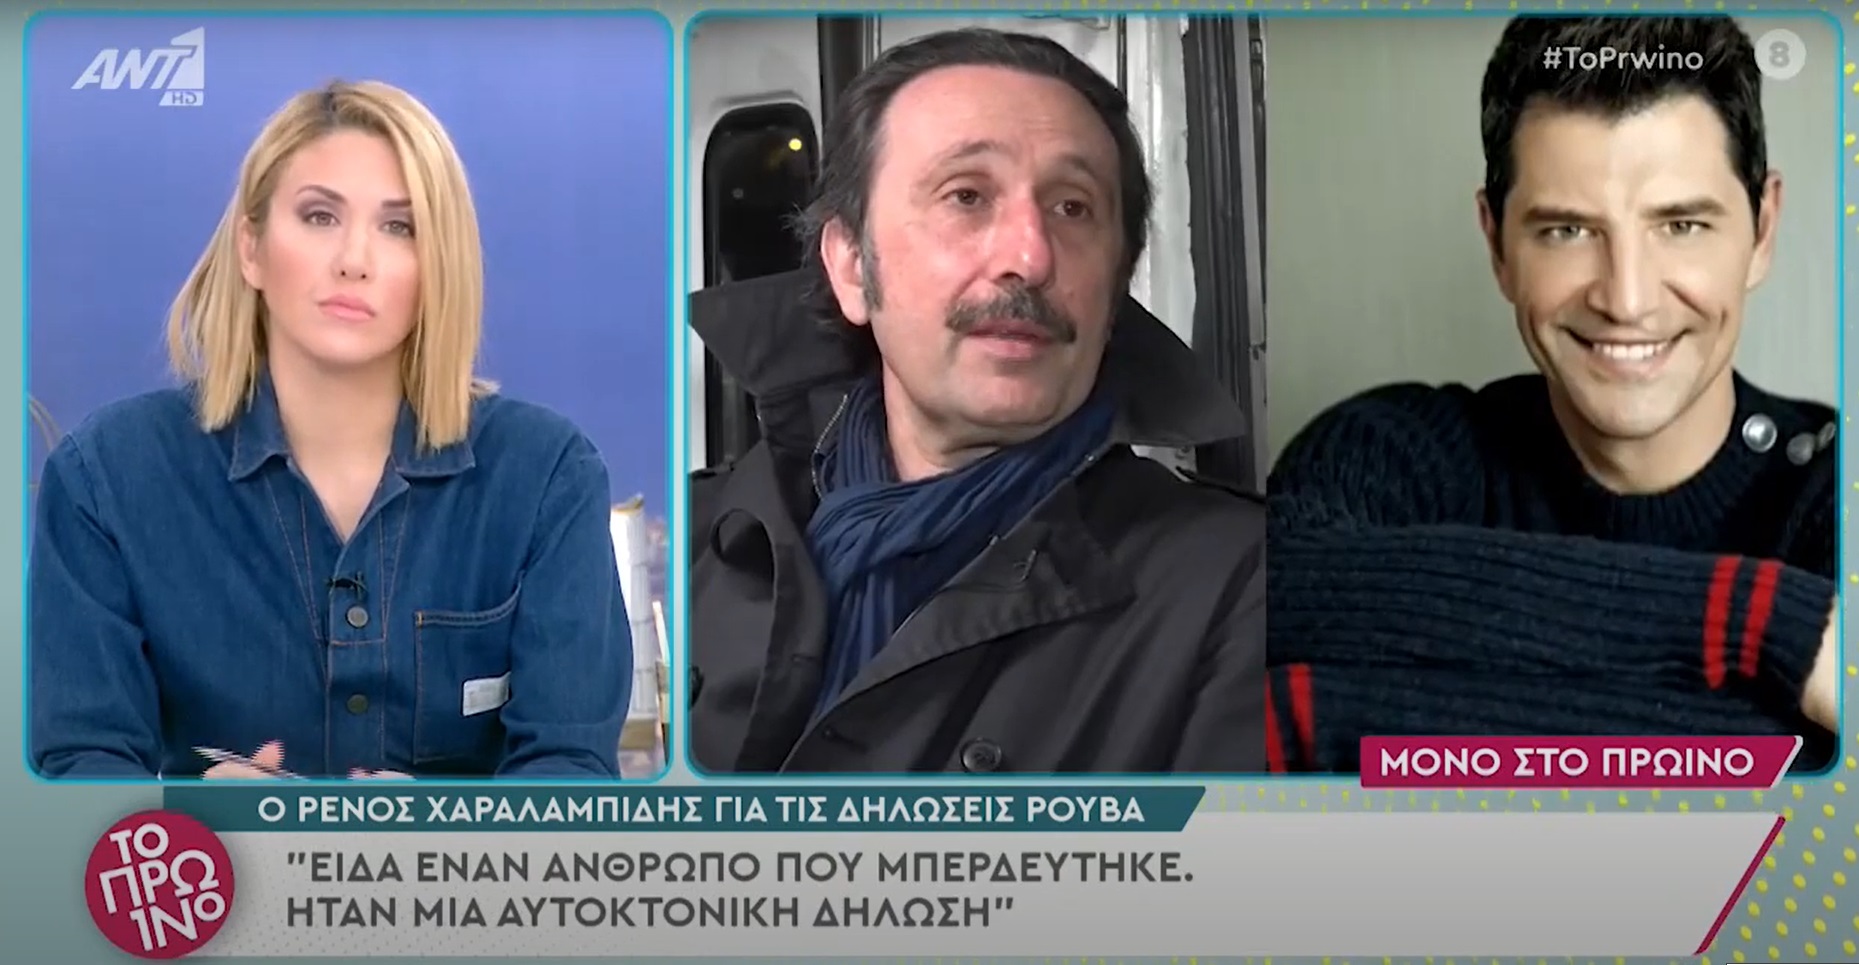 Ρένος Χαραλαμπίδης: "Αυτοκτονικές οι δηλώσεις του Ρουβά για τον Λιγνάδη"